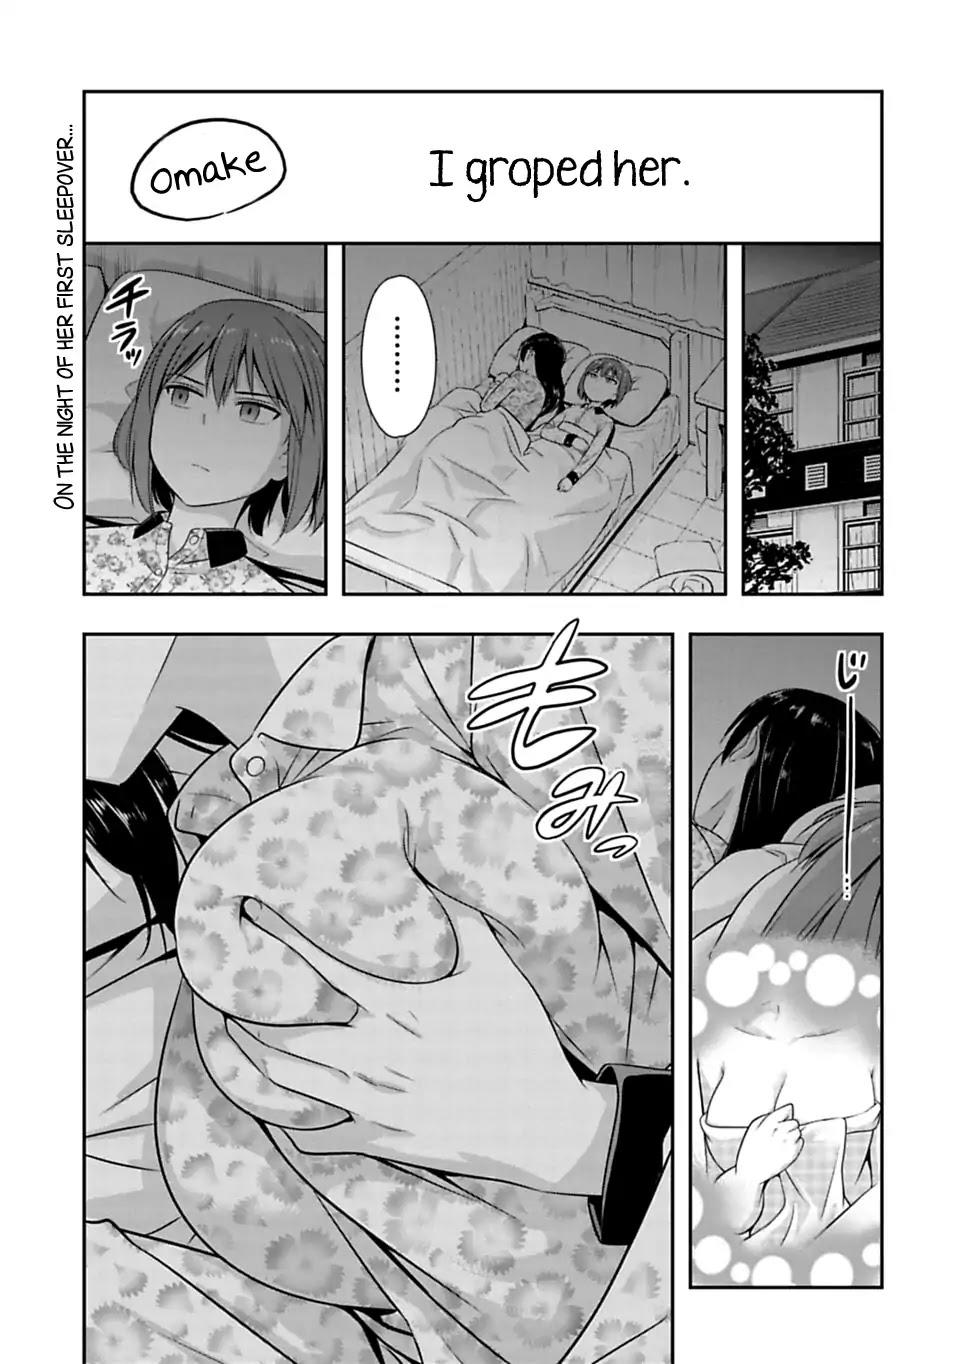 Groping manga